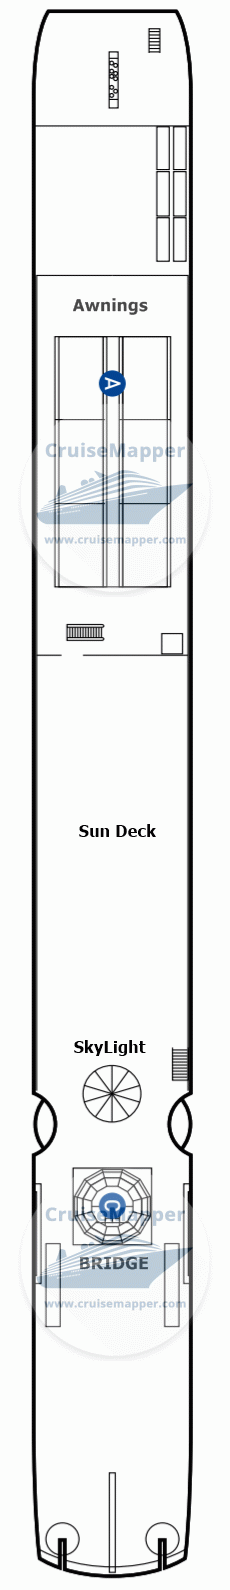 MS Bolero Deck 04 - Sundeck